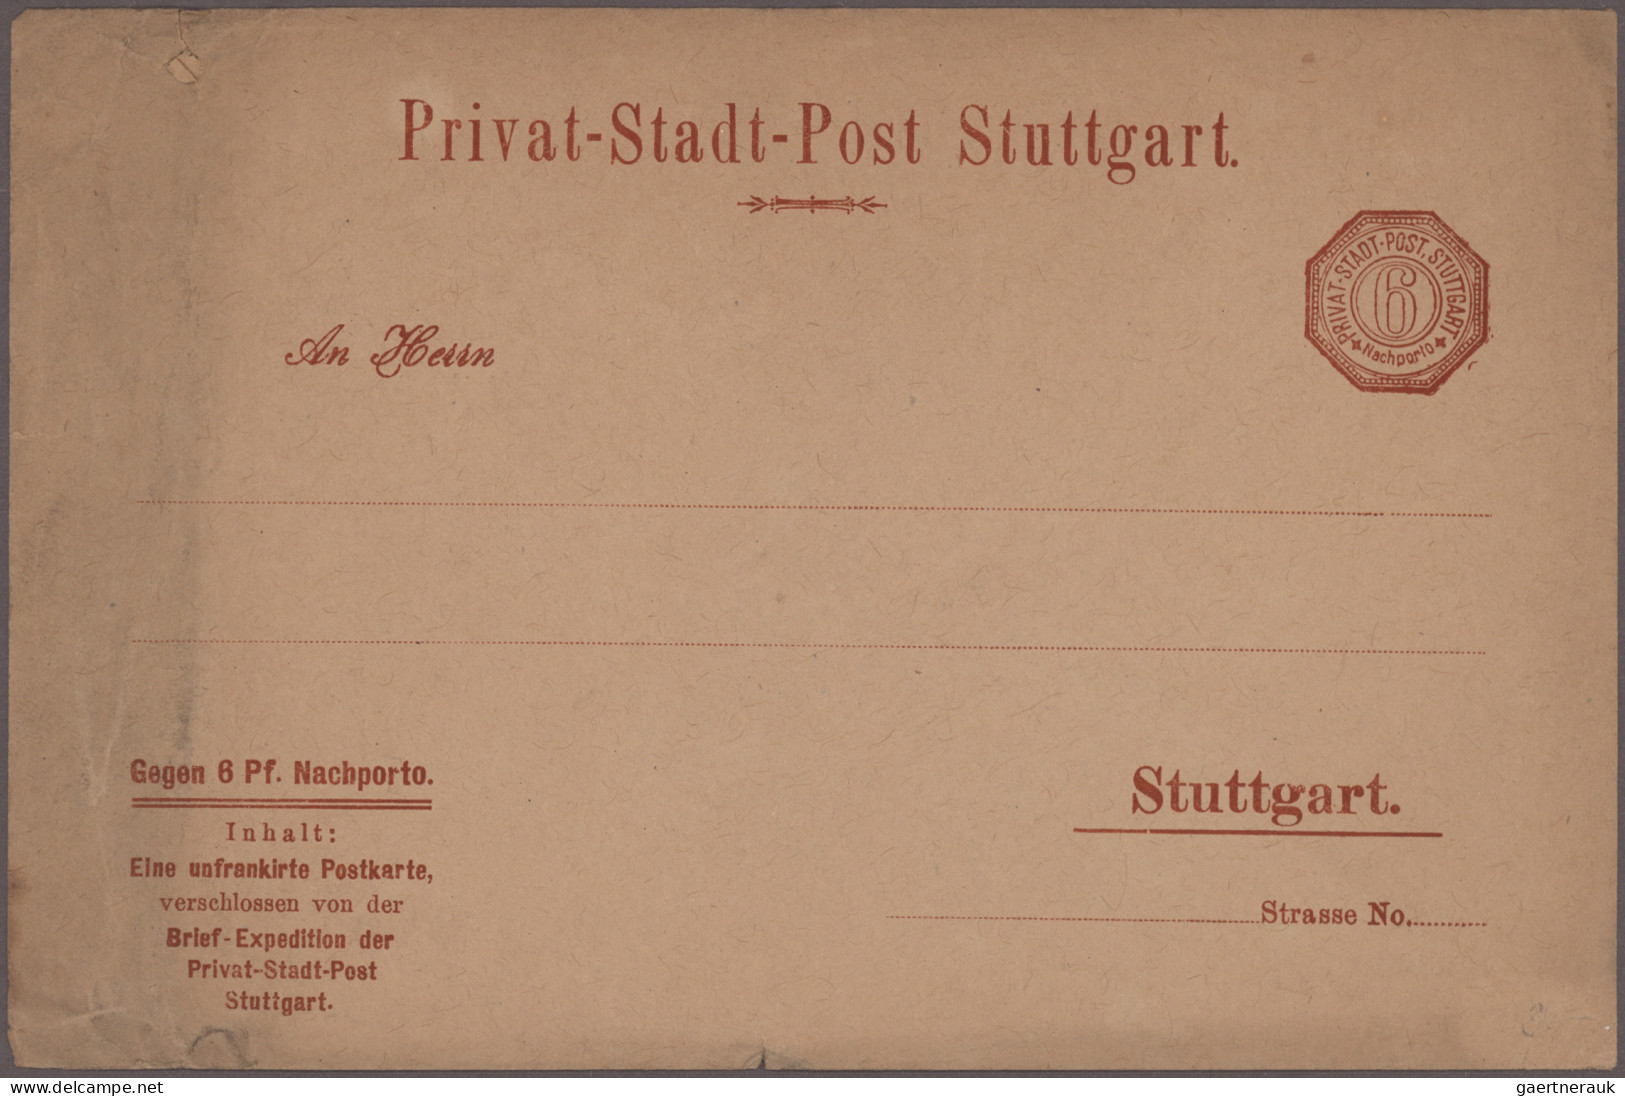 Deutsches Reich - Privatpost (Stadtpost): 1800/1900 (ca.), Partie von ca. 84 Bel